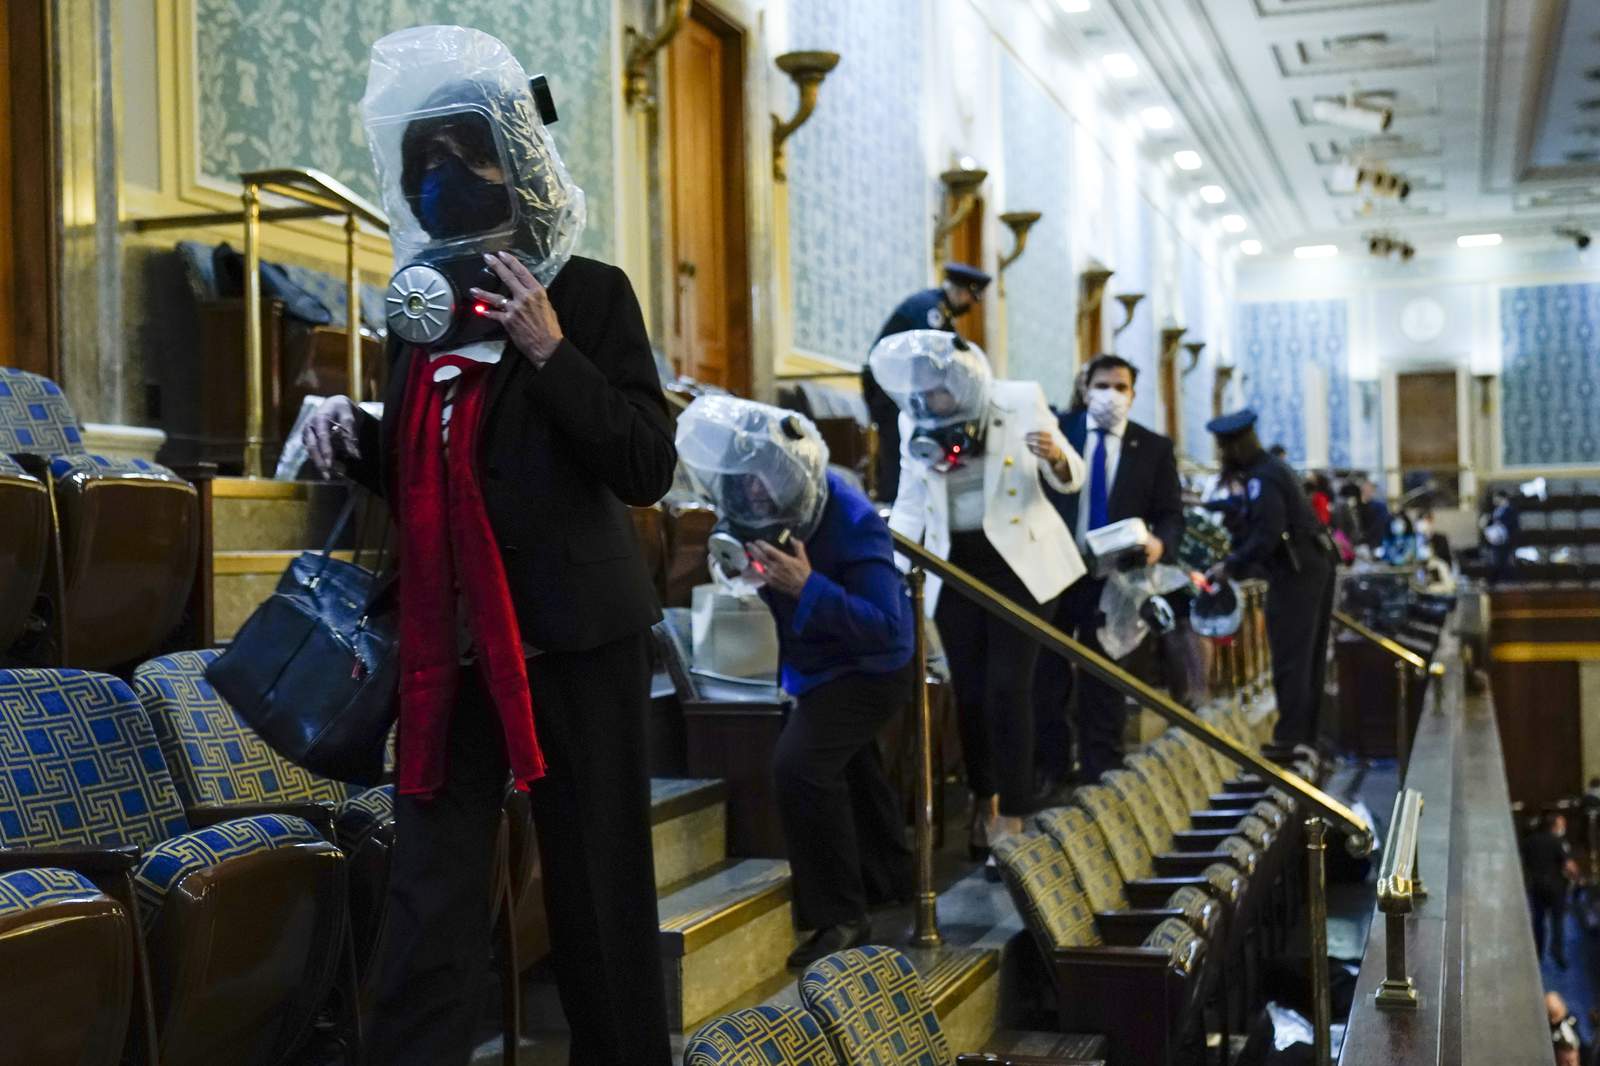 Media captures unprecedented storming of U.S. Capitol